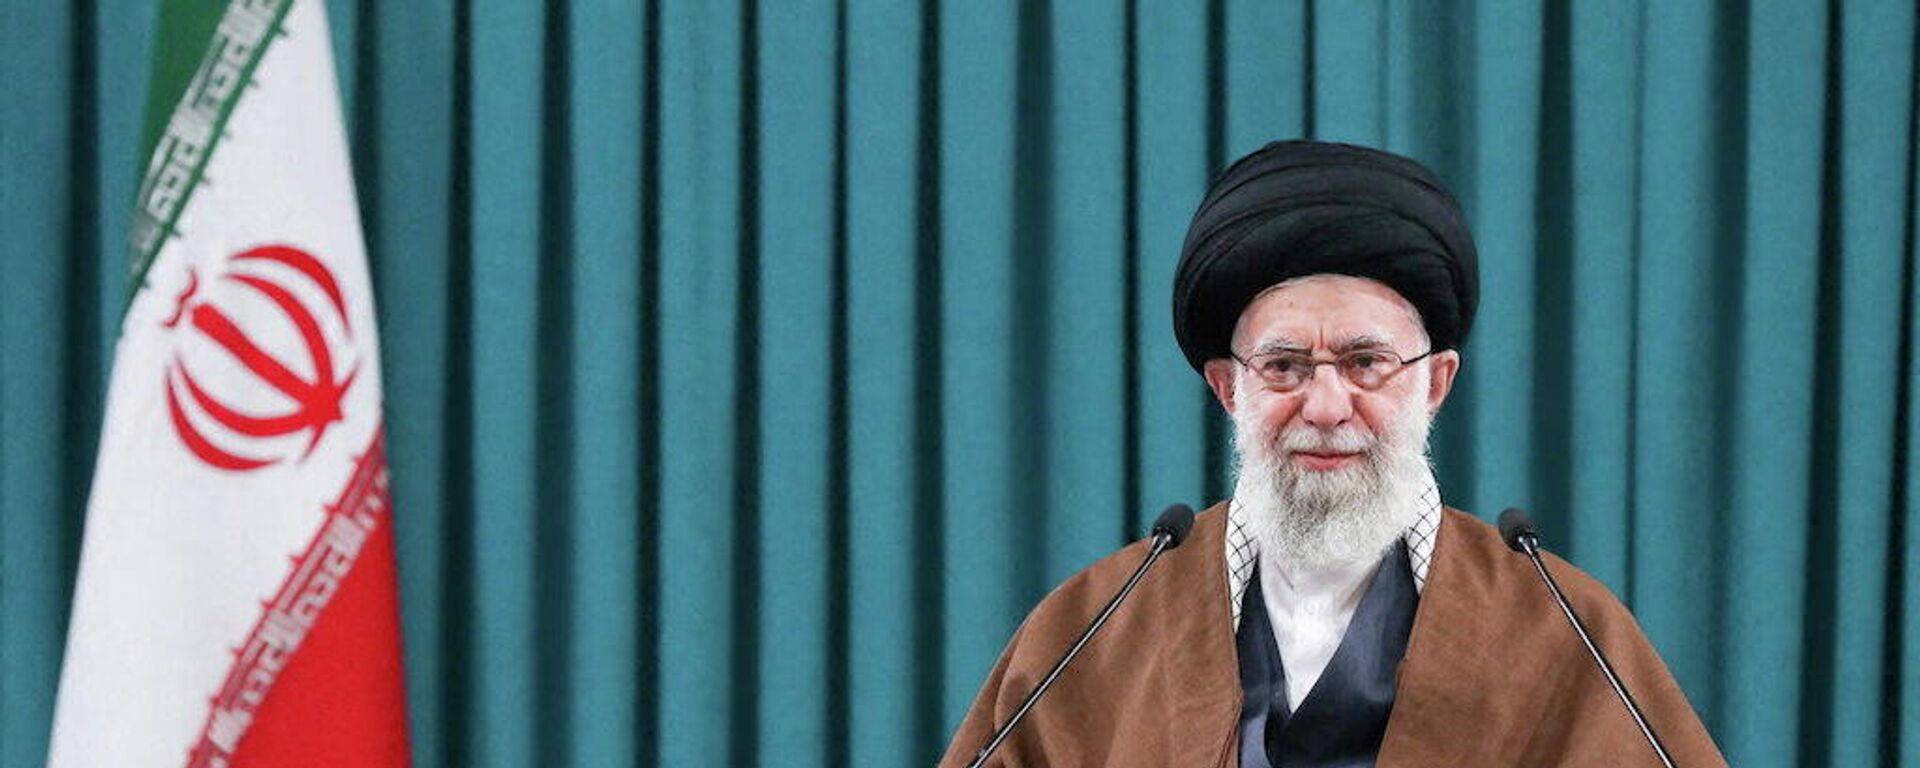 O líder supremo iraniano, o aiatolá Ali Khamenei, faz um discurso televisionado em Teerã, Irã, 1º de março de 2022 - Sputnik Brasil, 1920, 01.03.2022